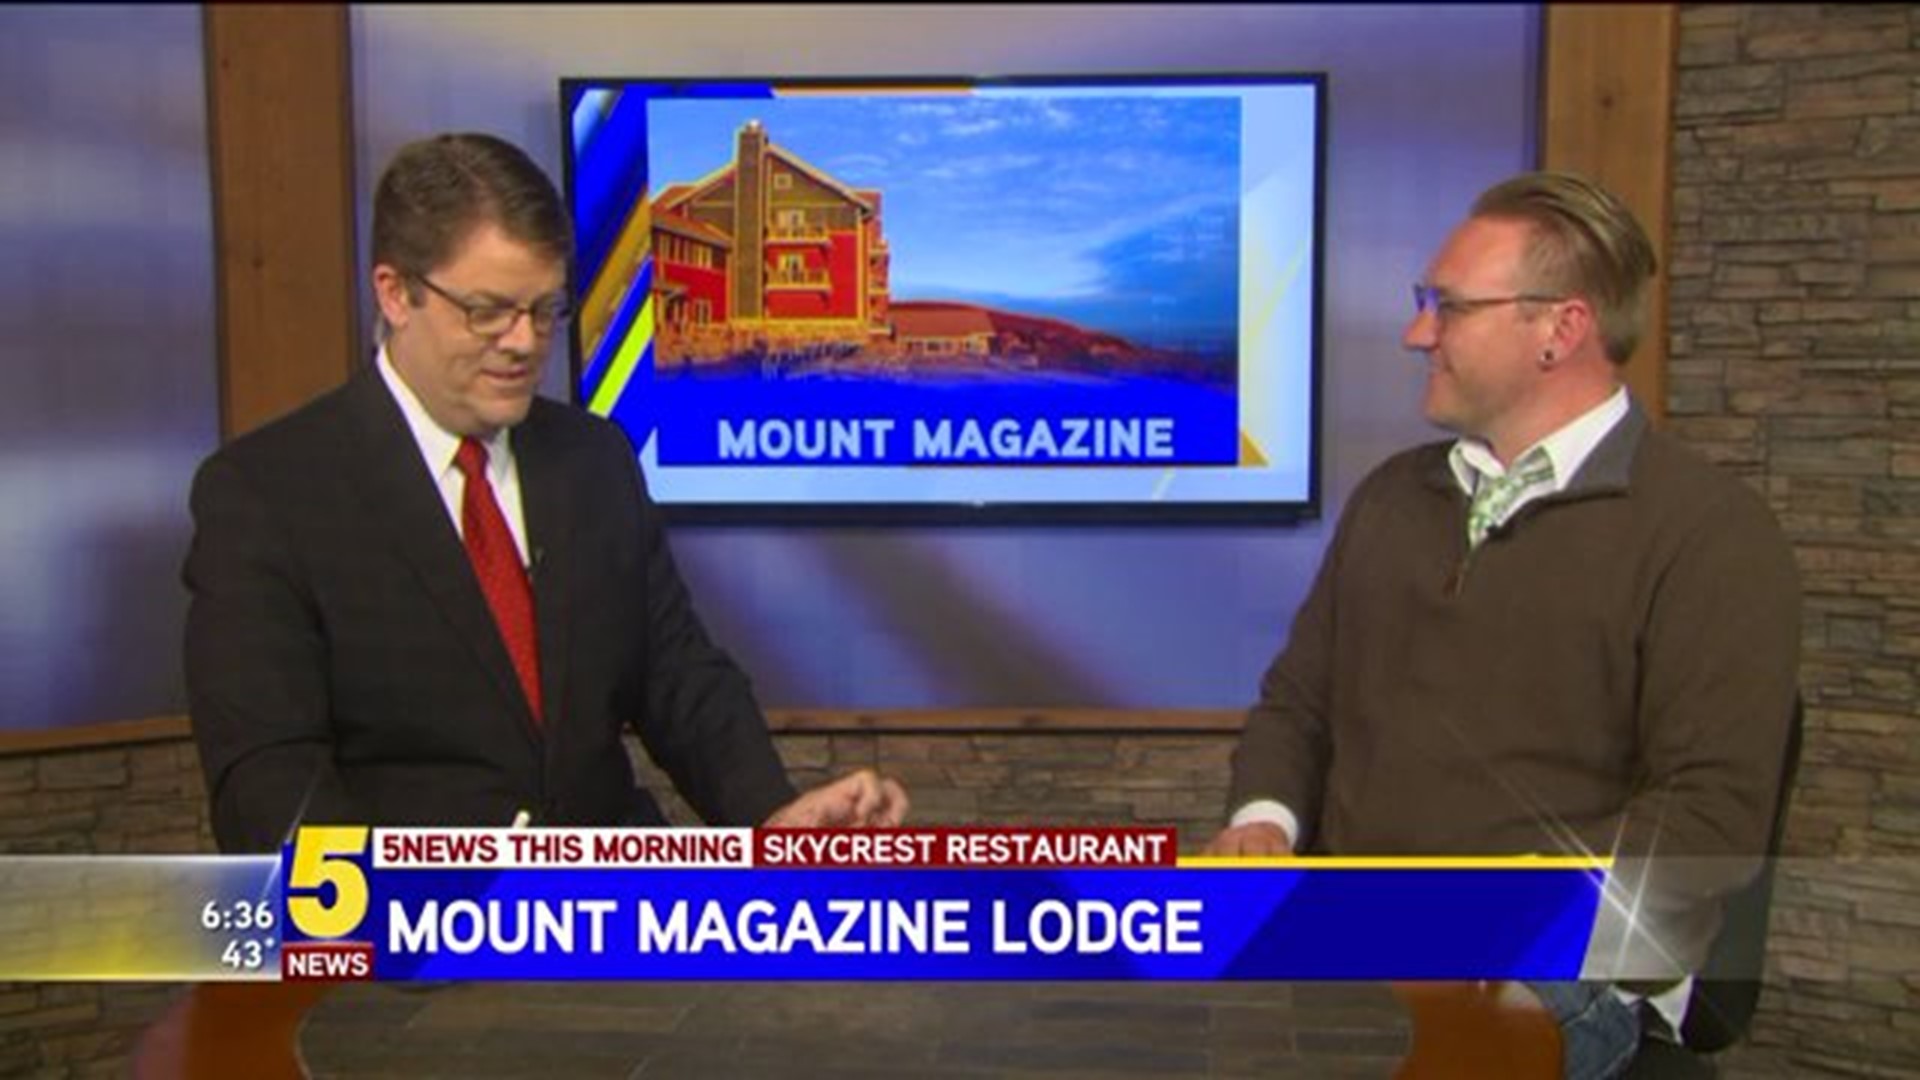 Mt. Magazine Lodge